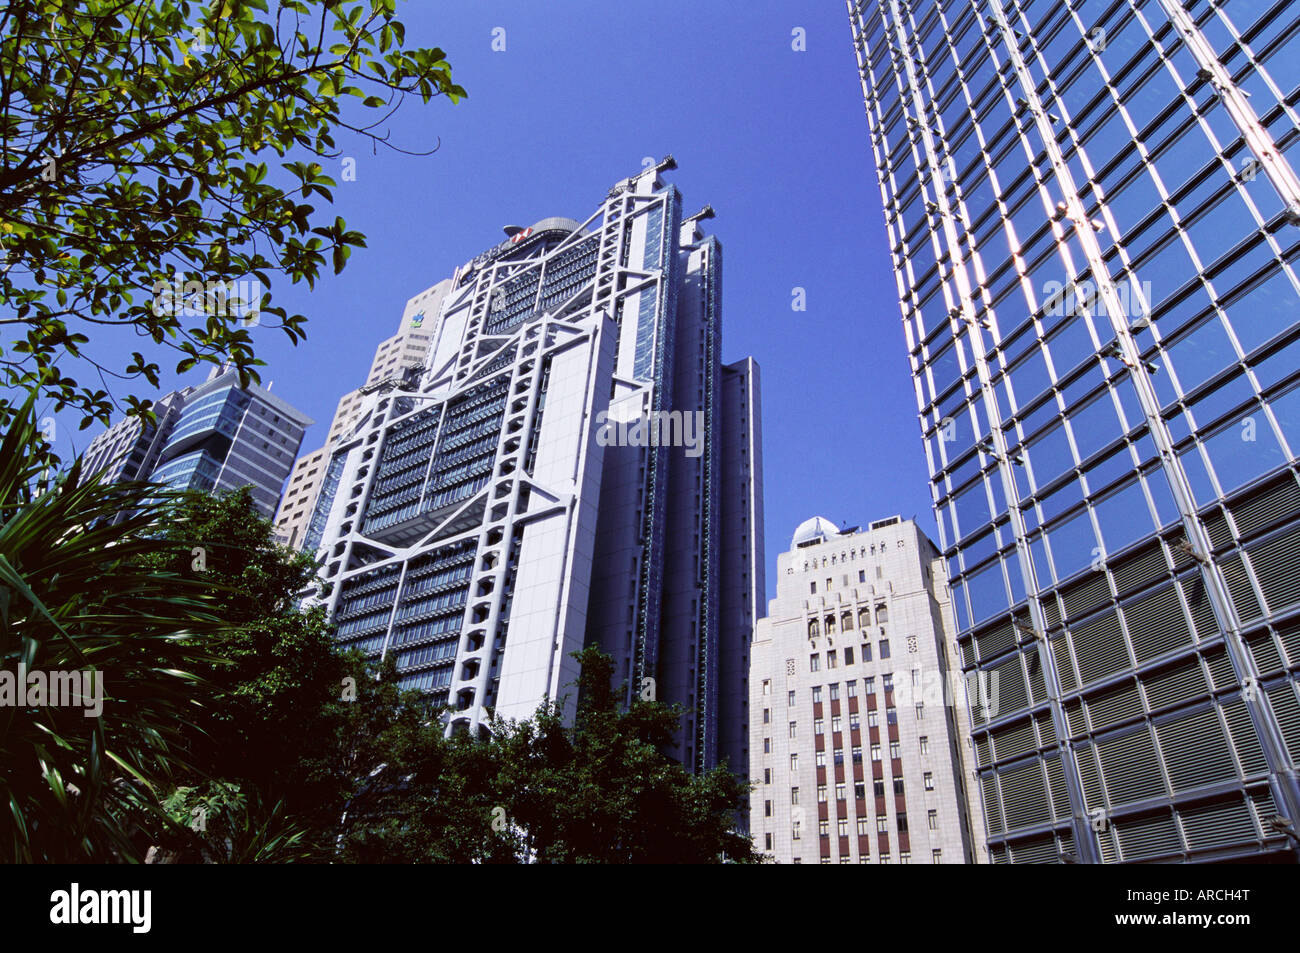 H.S.B.C. Edificio, vecchia Banca di Cina edificio e Cheung Kong Center sulla destra, centrale, Isola di Hong Kong, Hong Kong, Cina Foto Stock